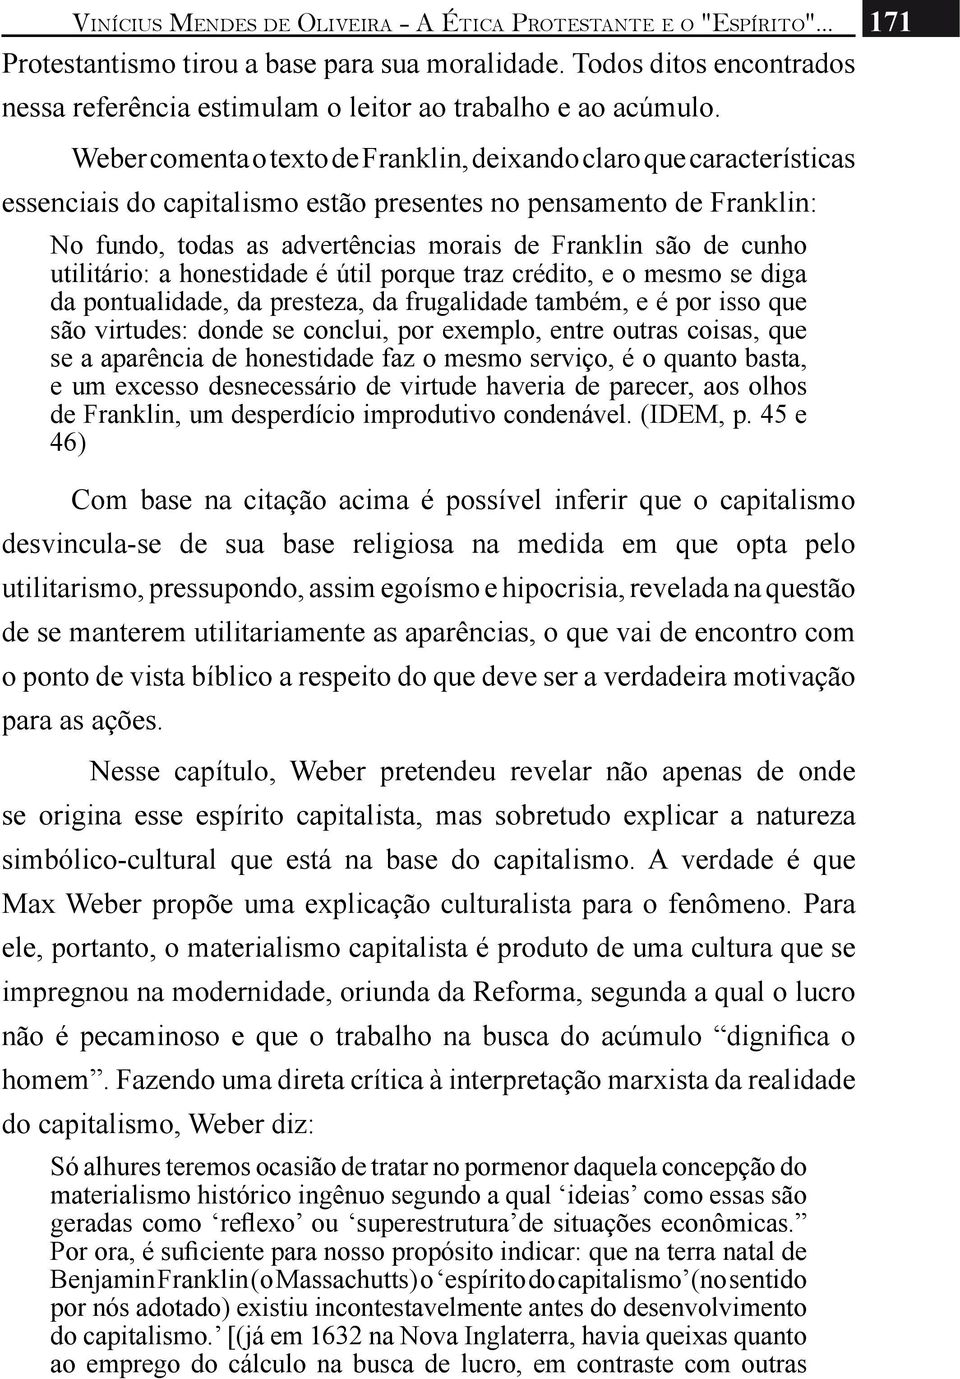 Weber comenta o texto de Franklin, deixando claro que características essenciais do capitalismo estão presentes no pensamento de Franklin: No fundo, todas as advertências morais de Franklin são de